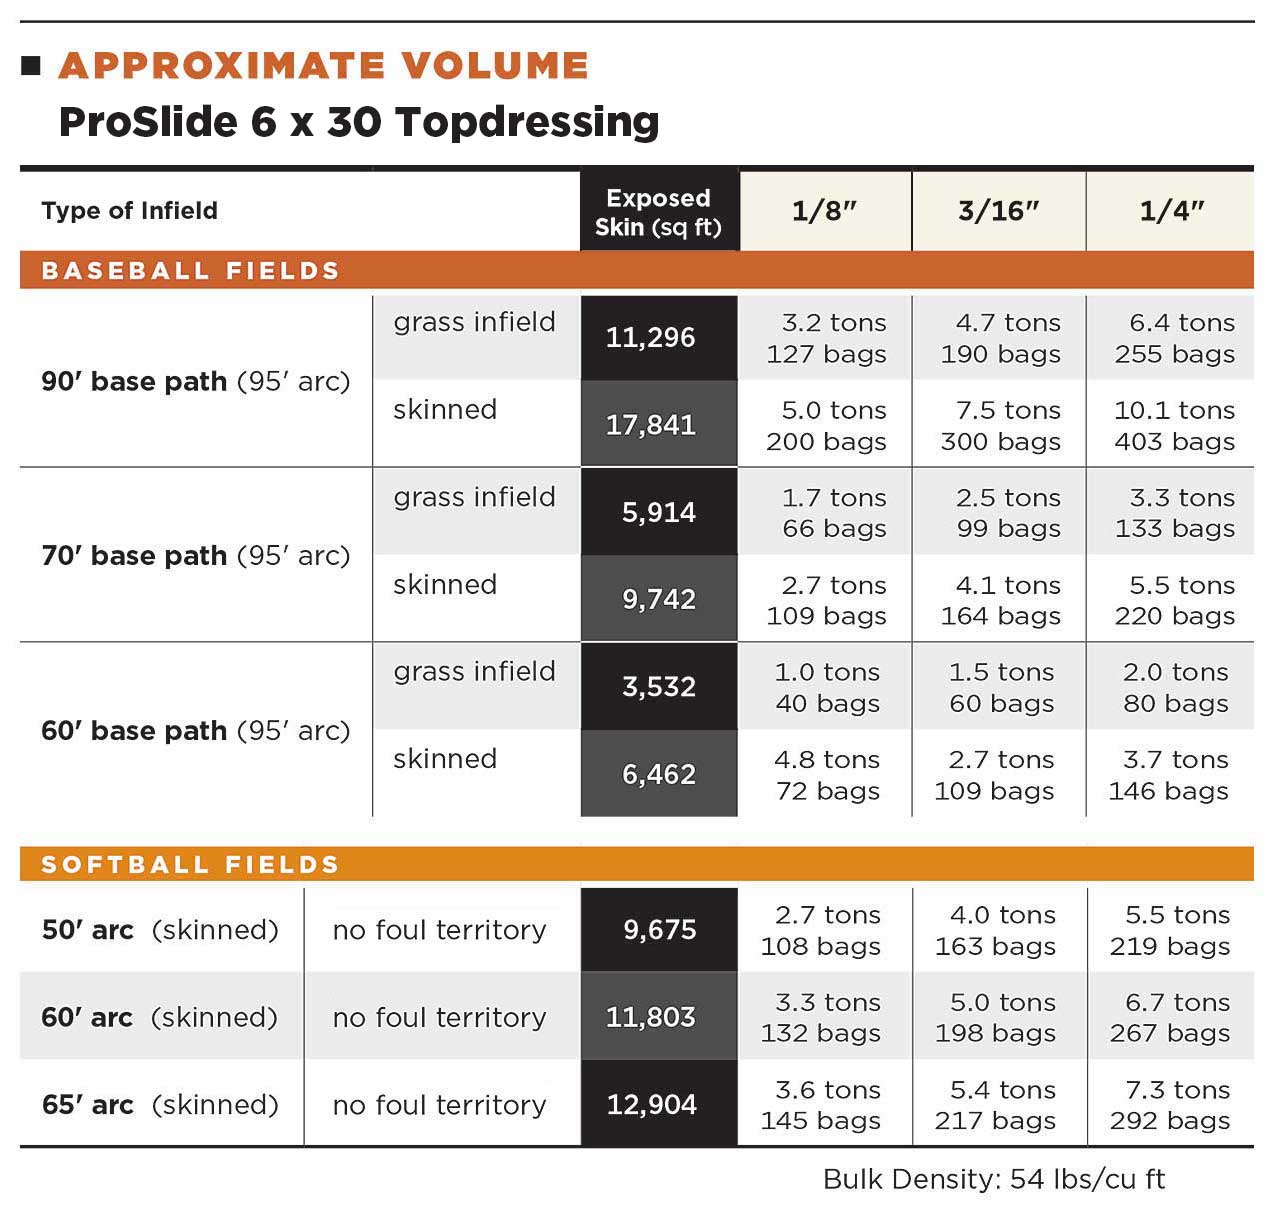 ProSlide 6x30 Topdressing Volume Table